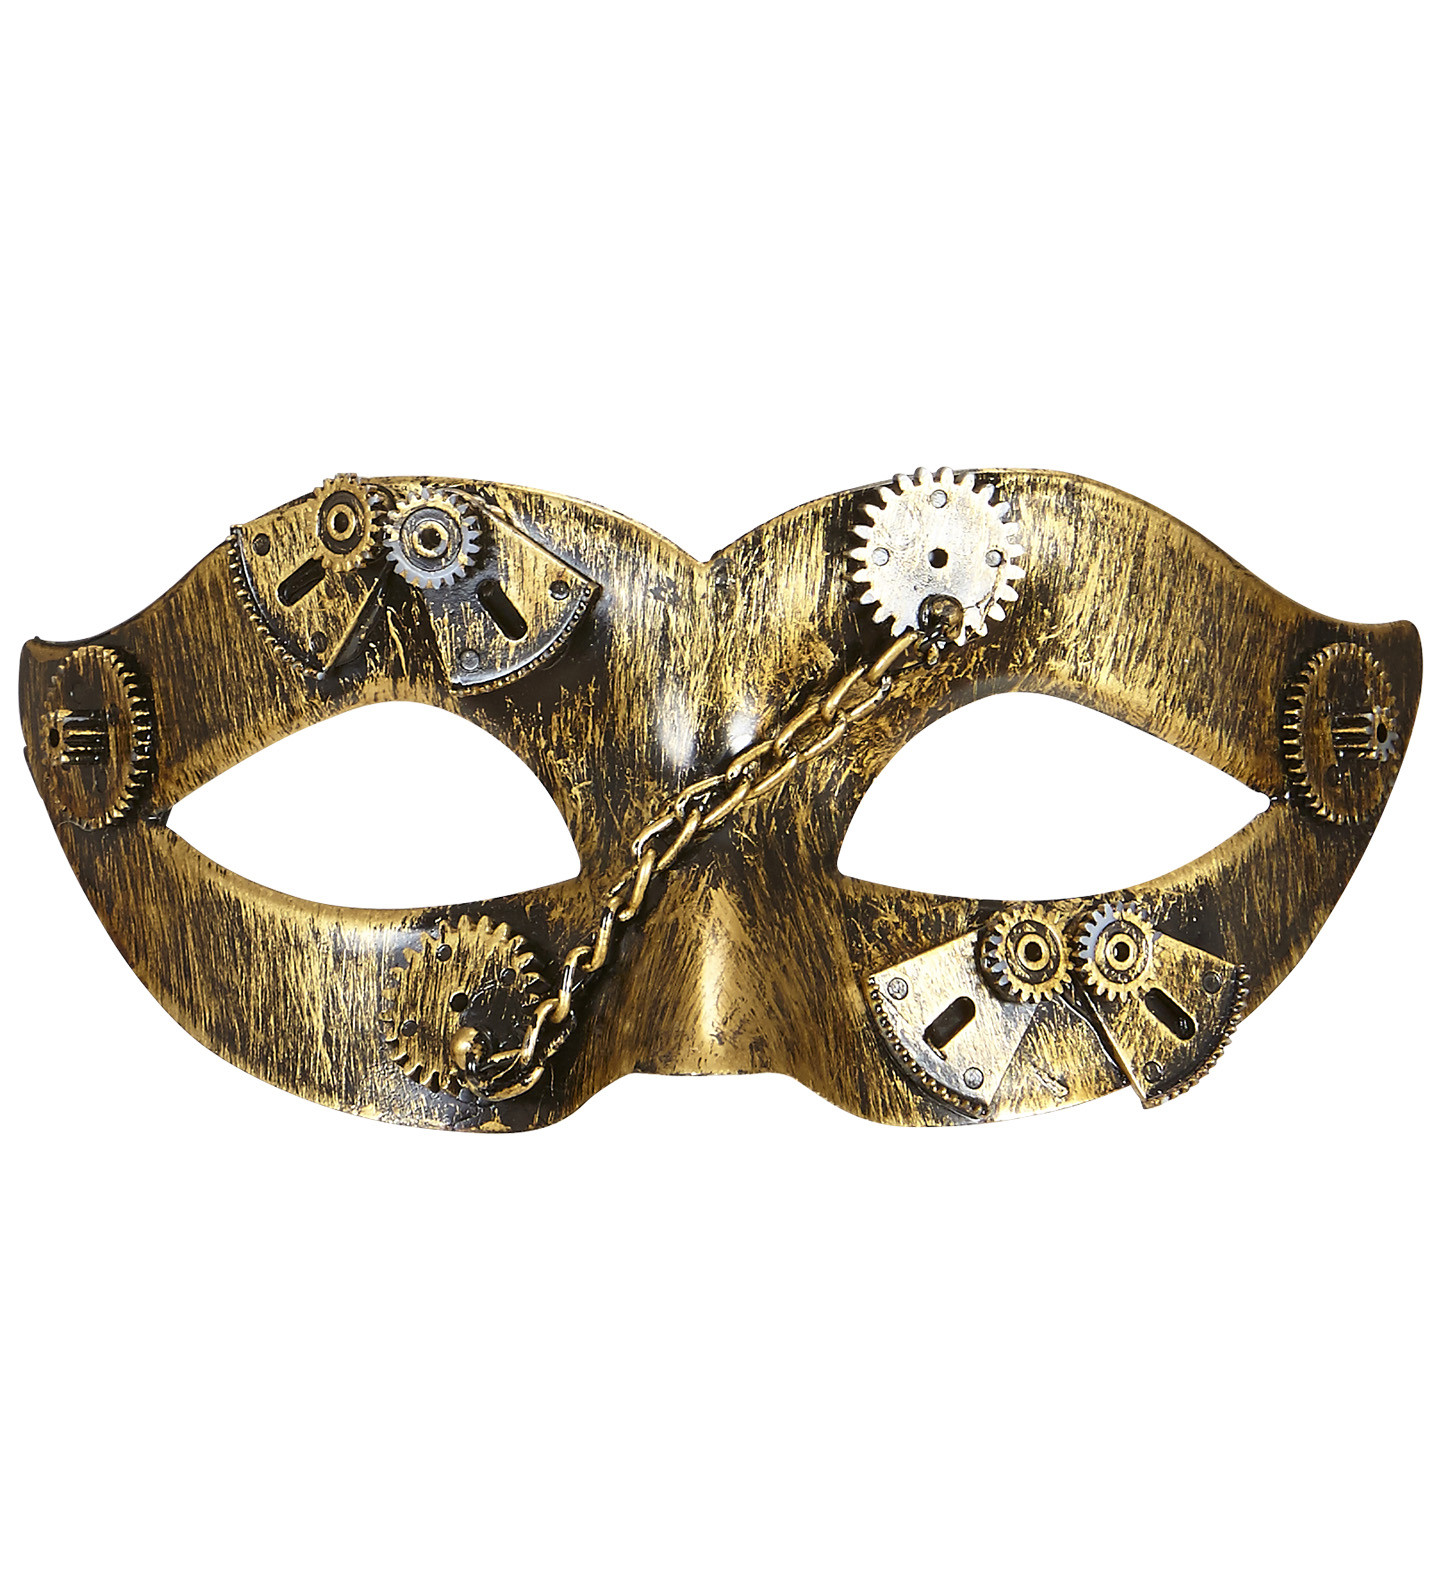 Maschera Donna Steampunk Accessori Costume Carnevale PS 11342